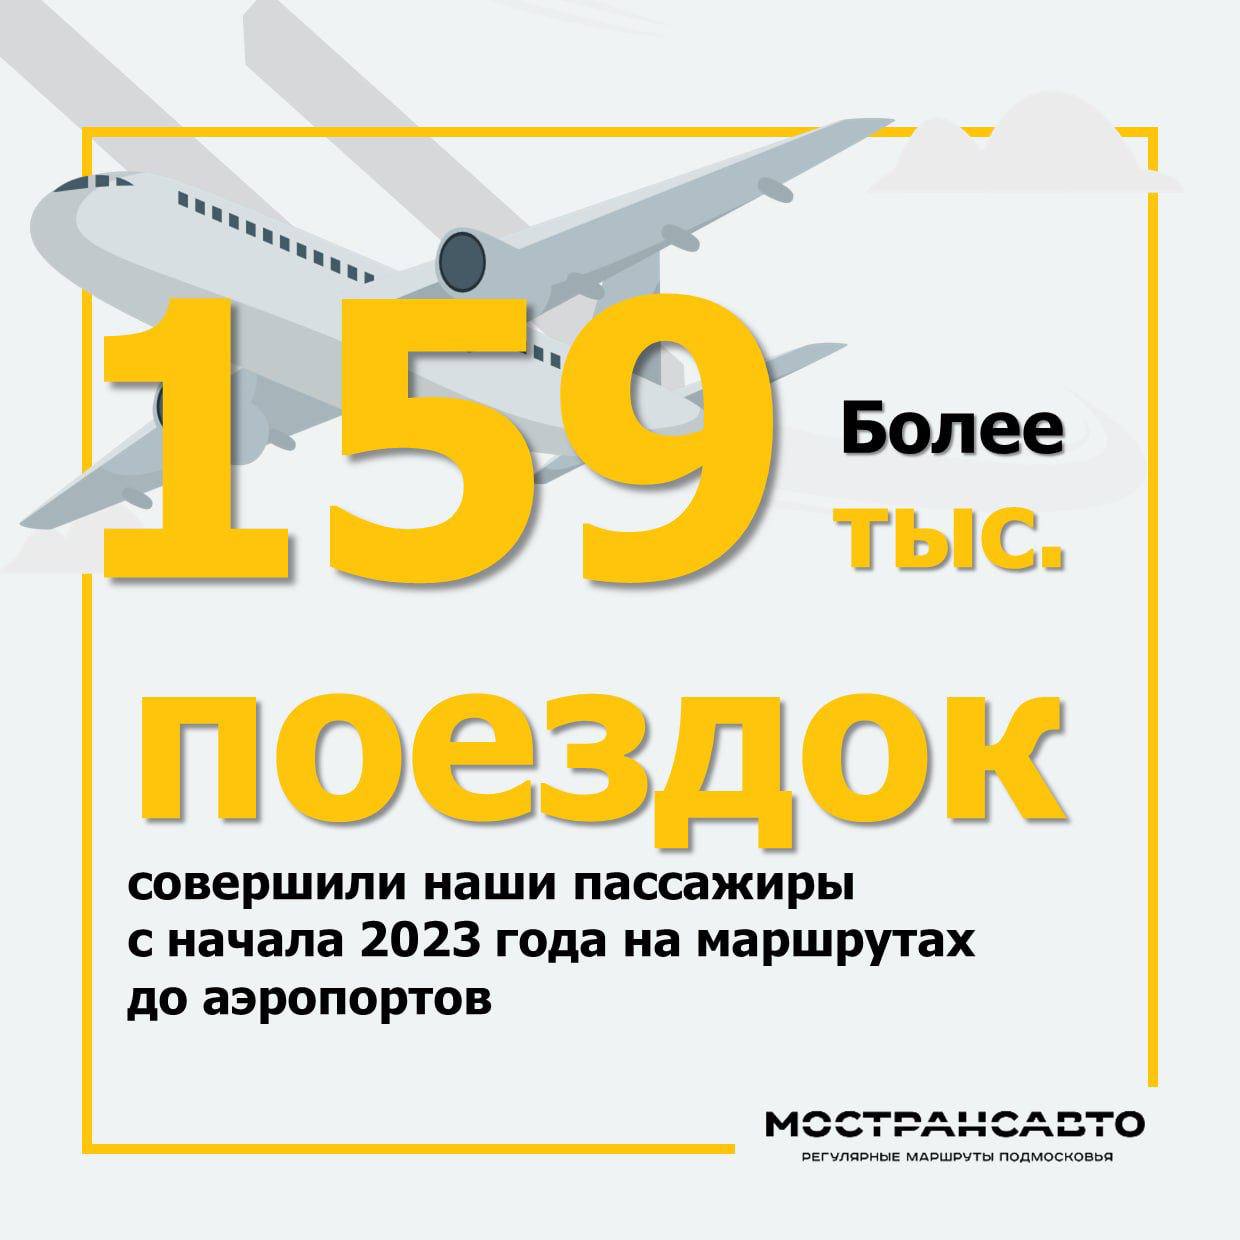 C начала 2023 года пассажиры Мострансавто совершили более 159 тысяч поездок на маршрутах, следующих до аэропортов